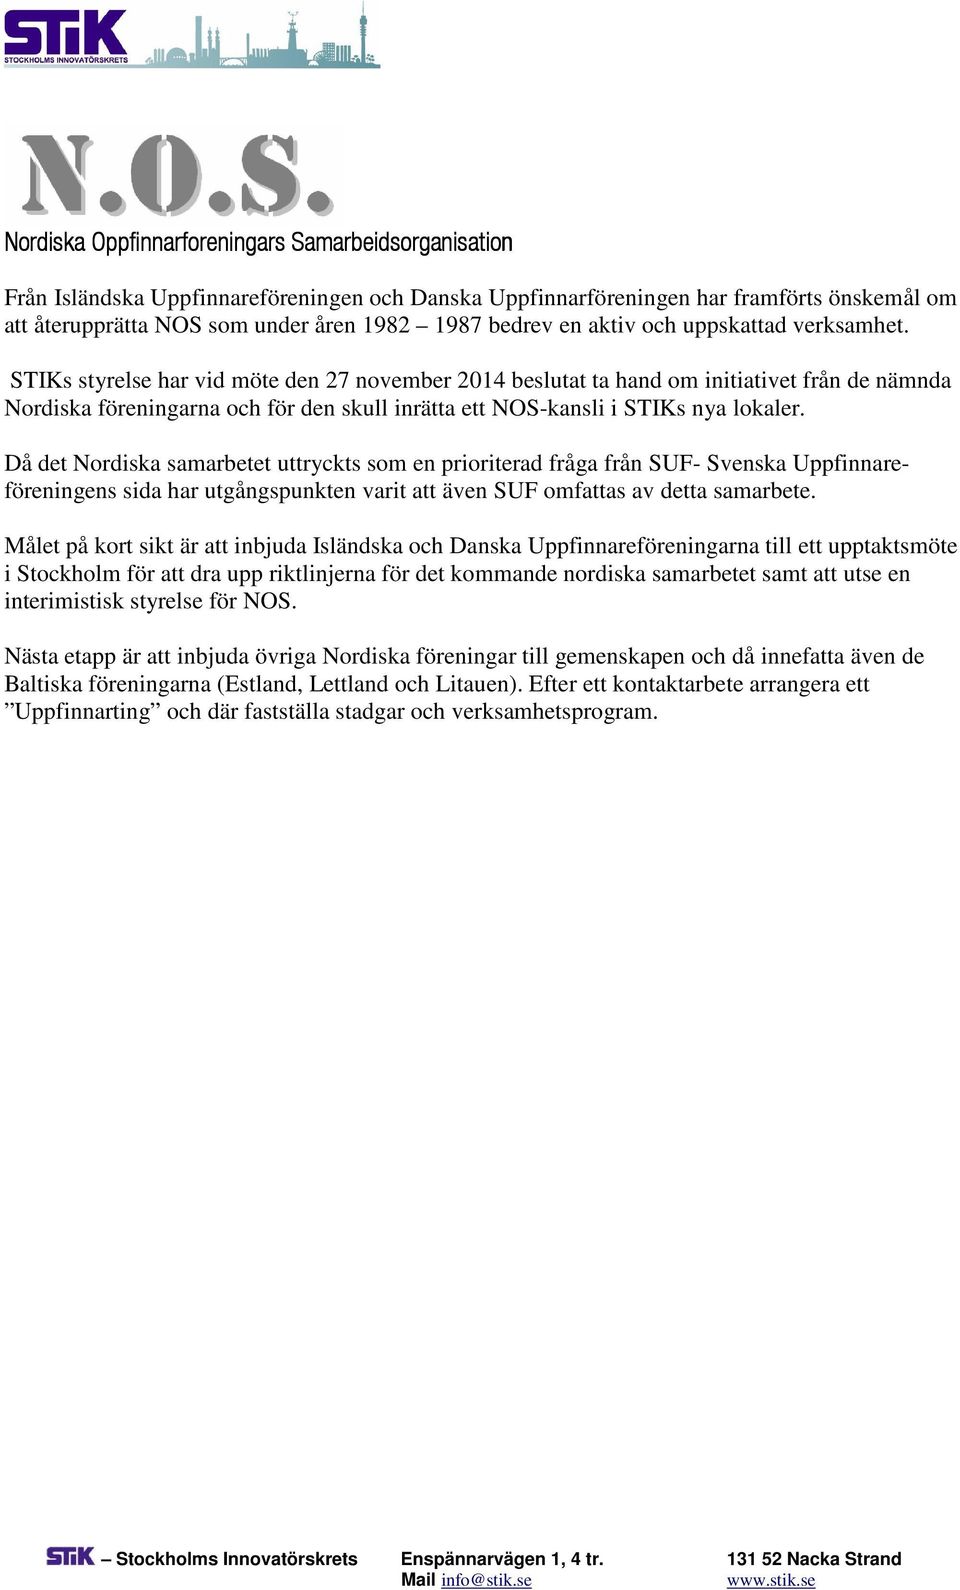 STIKs styrelse har vid möte den 27 november 2014 beslutat ta hand om initiativet från de nämnda Nordiska föreningarna och för den skull inrätta ett NOS-kansli i STIKs nya lokaler.